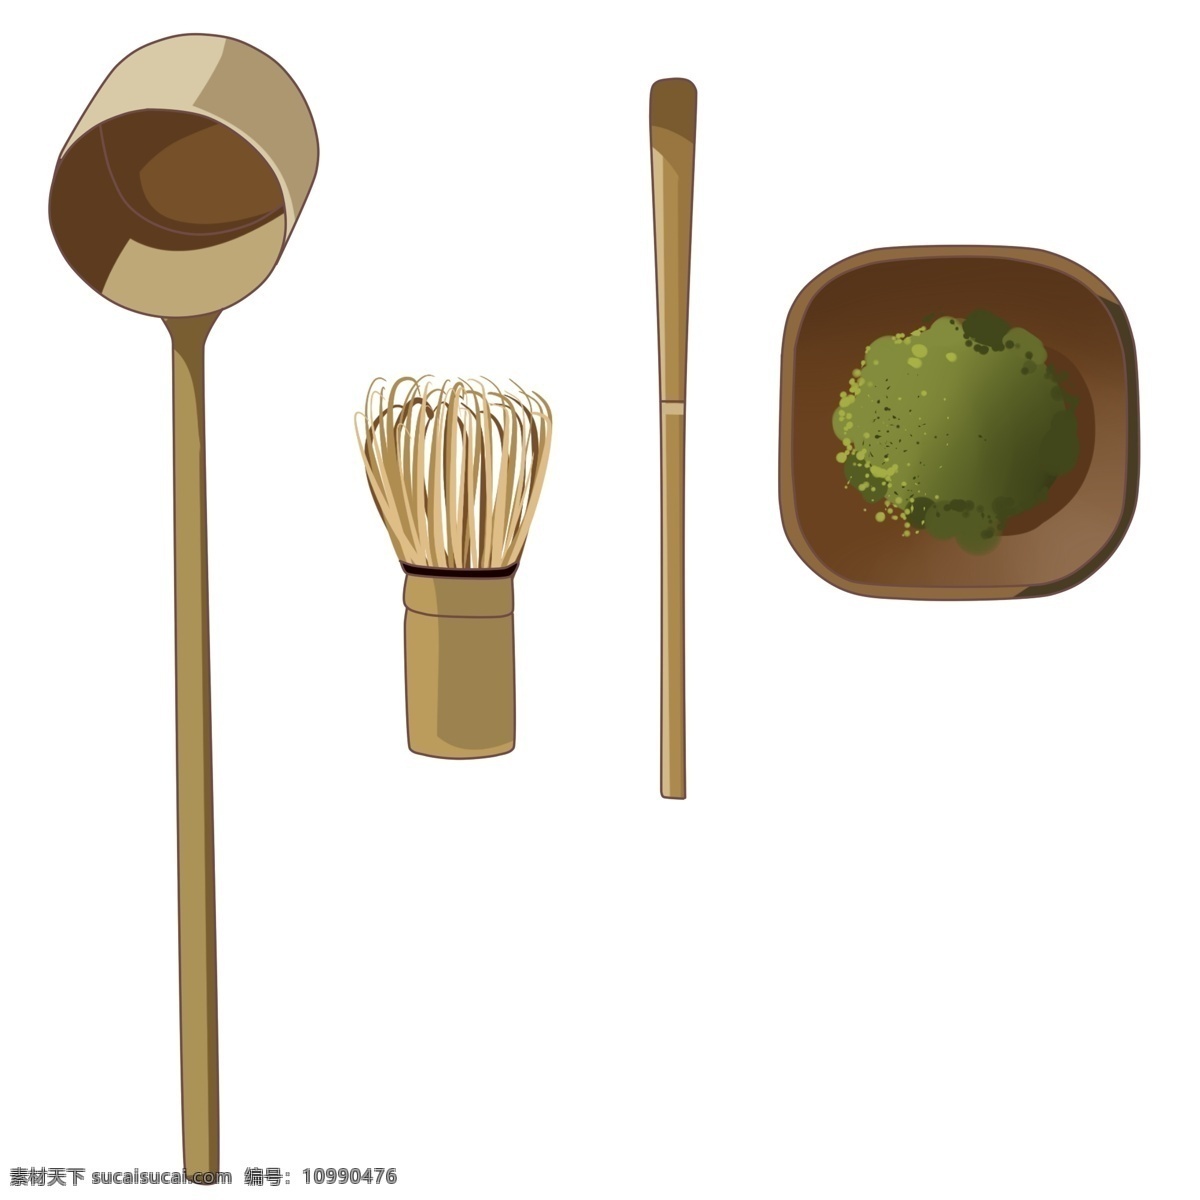 日本 经典 茶道 插图 茶具 茶勺 木勺 茶叶罐 漆器 抹茶 日本茶 日式分水勺 日本茶道